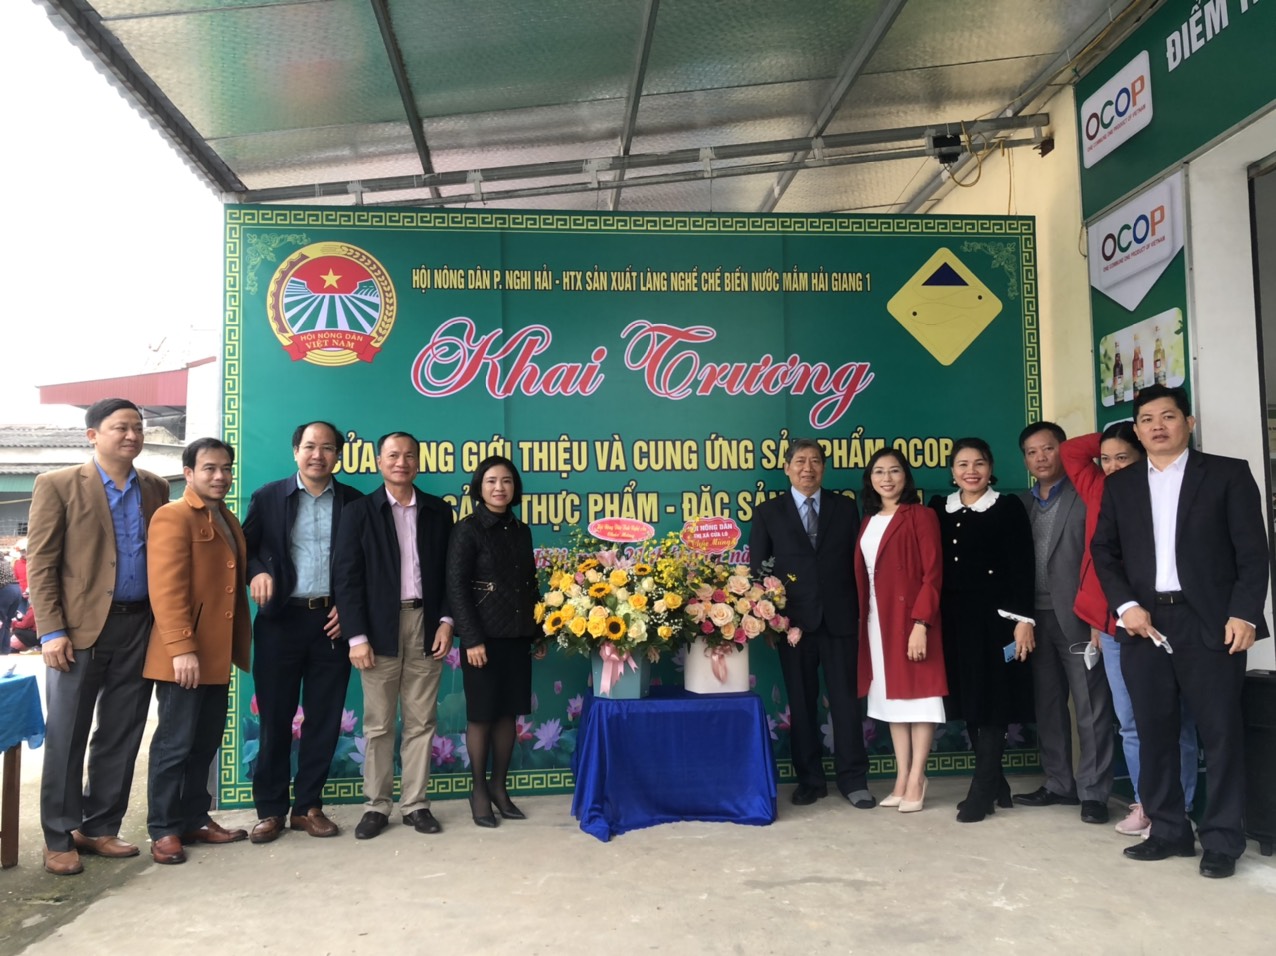 Thị xã Cửa Lò khai trương cửa hàng giới thiệu các sản phẩm OCOP đầu tiên tại phường Nghi Hải.